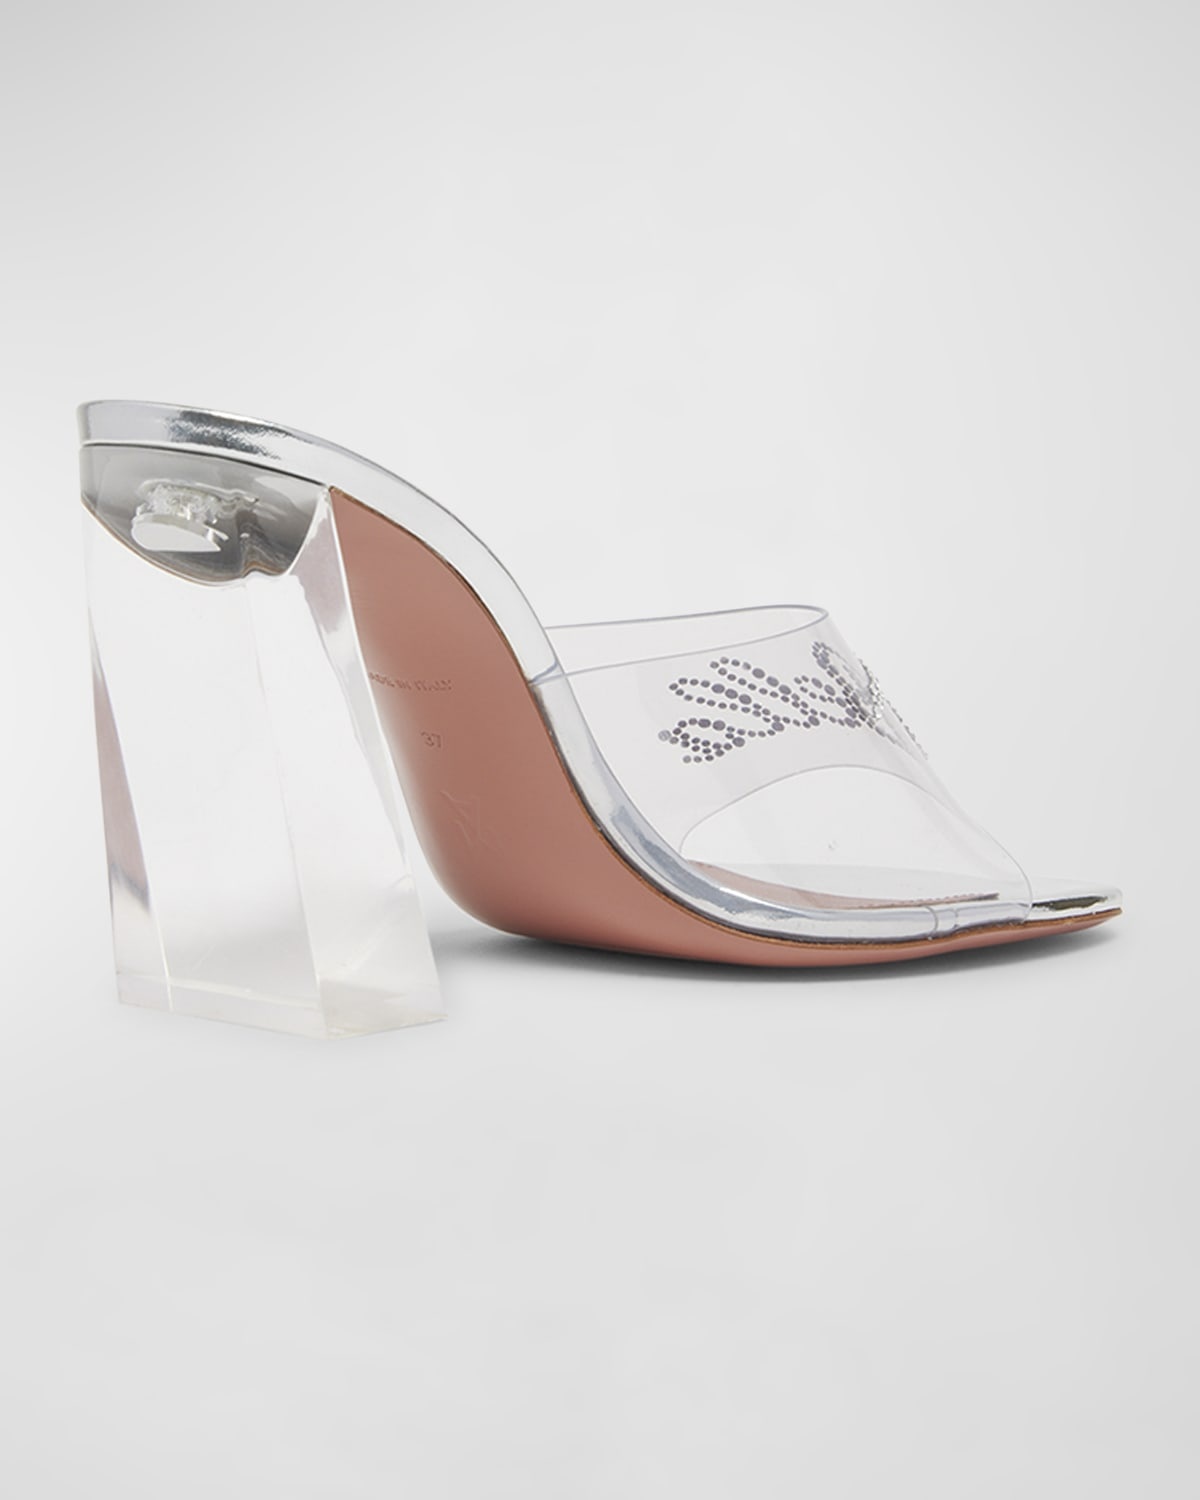 Bella Glass Slipper Mule Sandals - 3